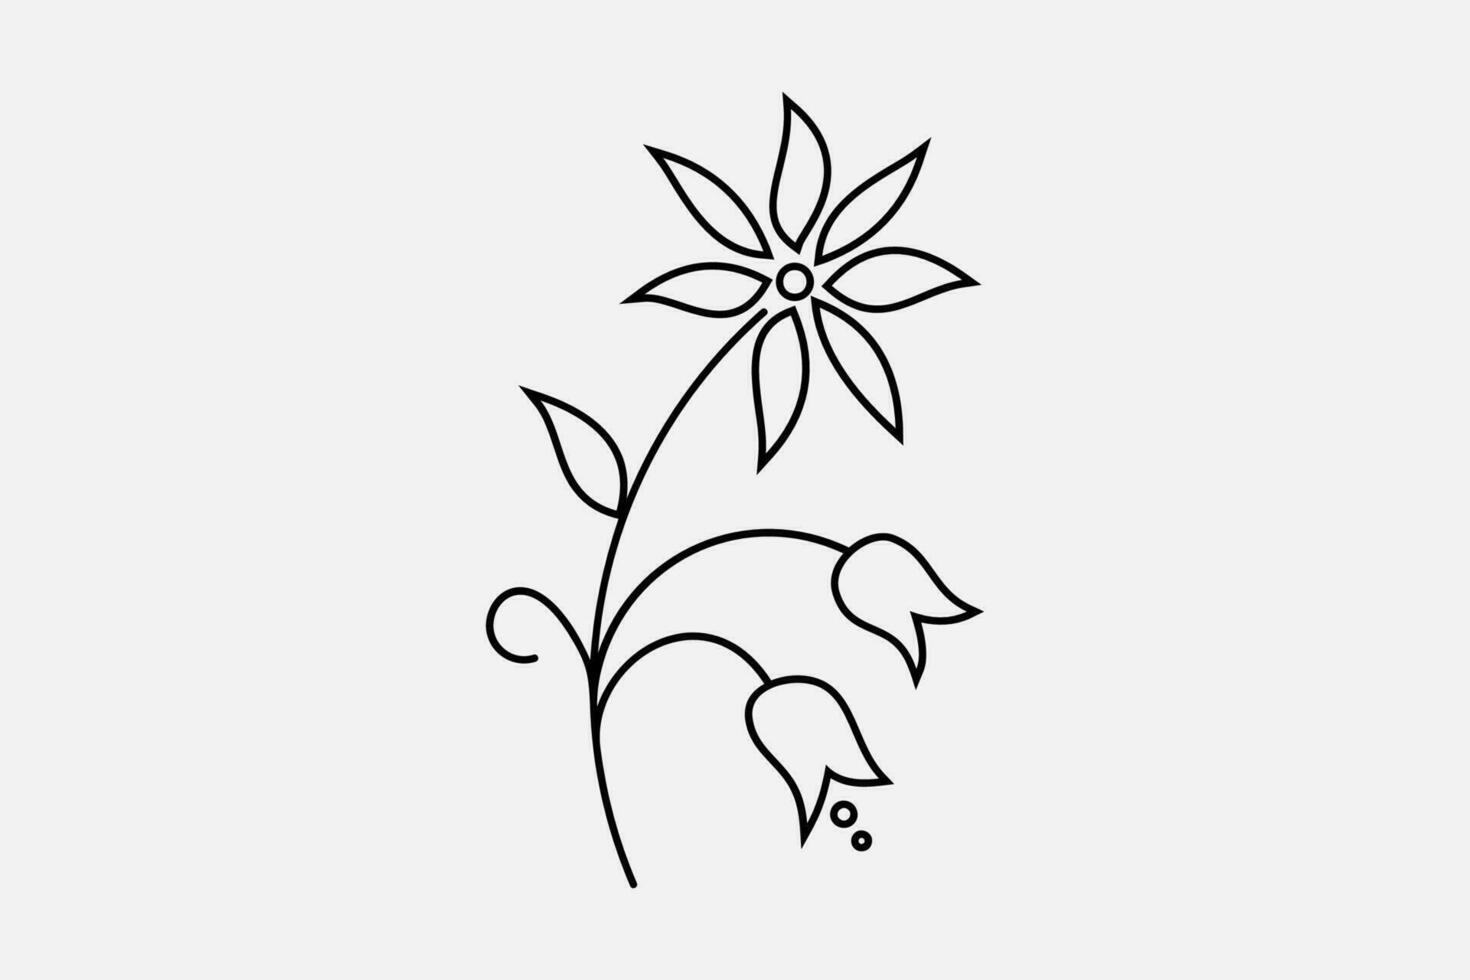 einfach schwarz Gliederung Hand gezeichnet Blume Design Elemente vektor